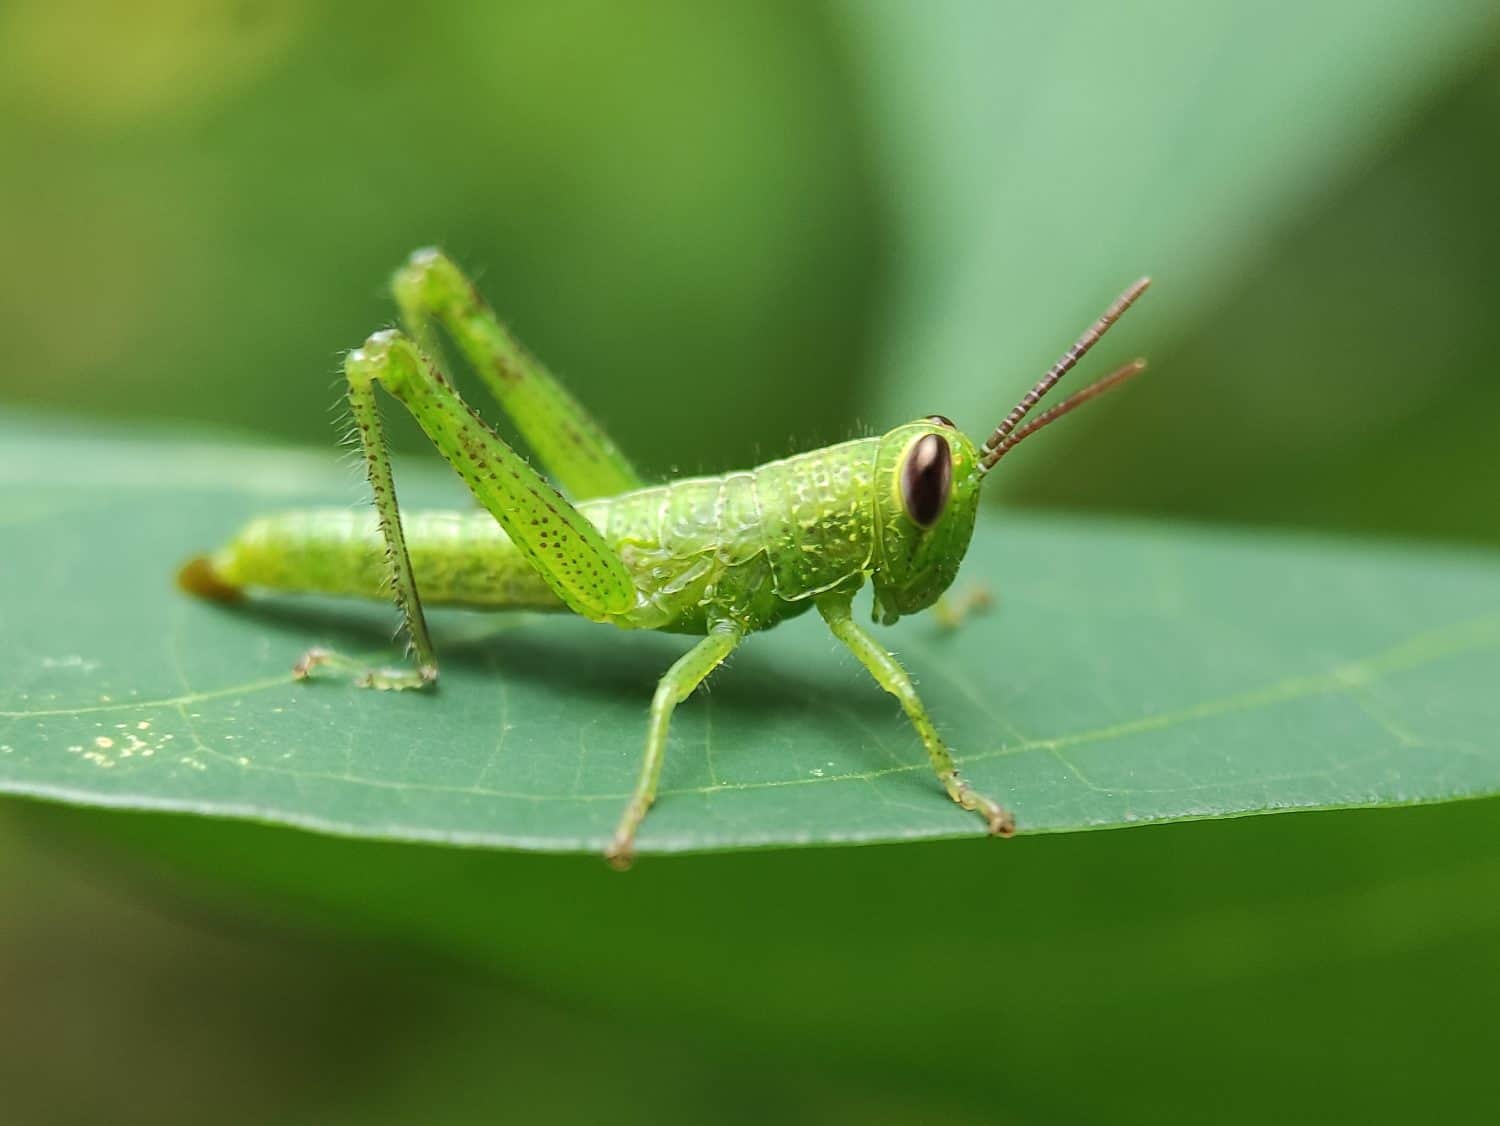 Green Grasshopper On A Green Leaf. Macros Photo.